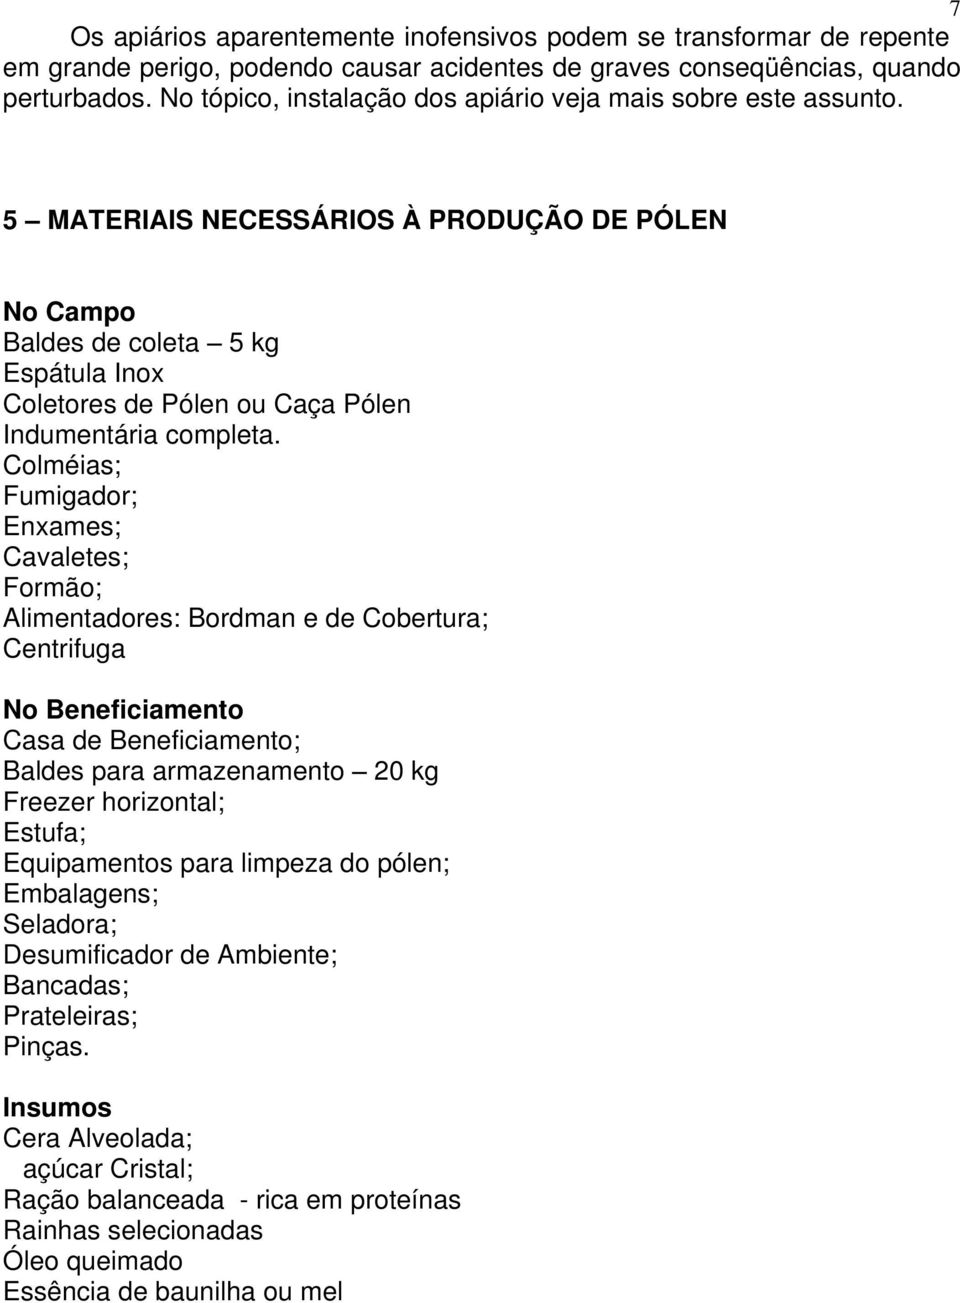 5 MATERIAIS NECESSÁRIOS À PRODUÇÃO DE PÓLEN No Campo Baldes de coleta 5 kg Espátula Inox Coletores de Pólen ou Caça Pólen Indumentária completa.